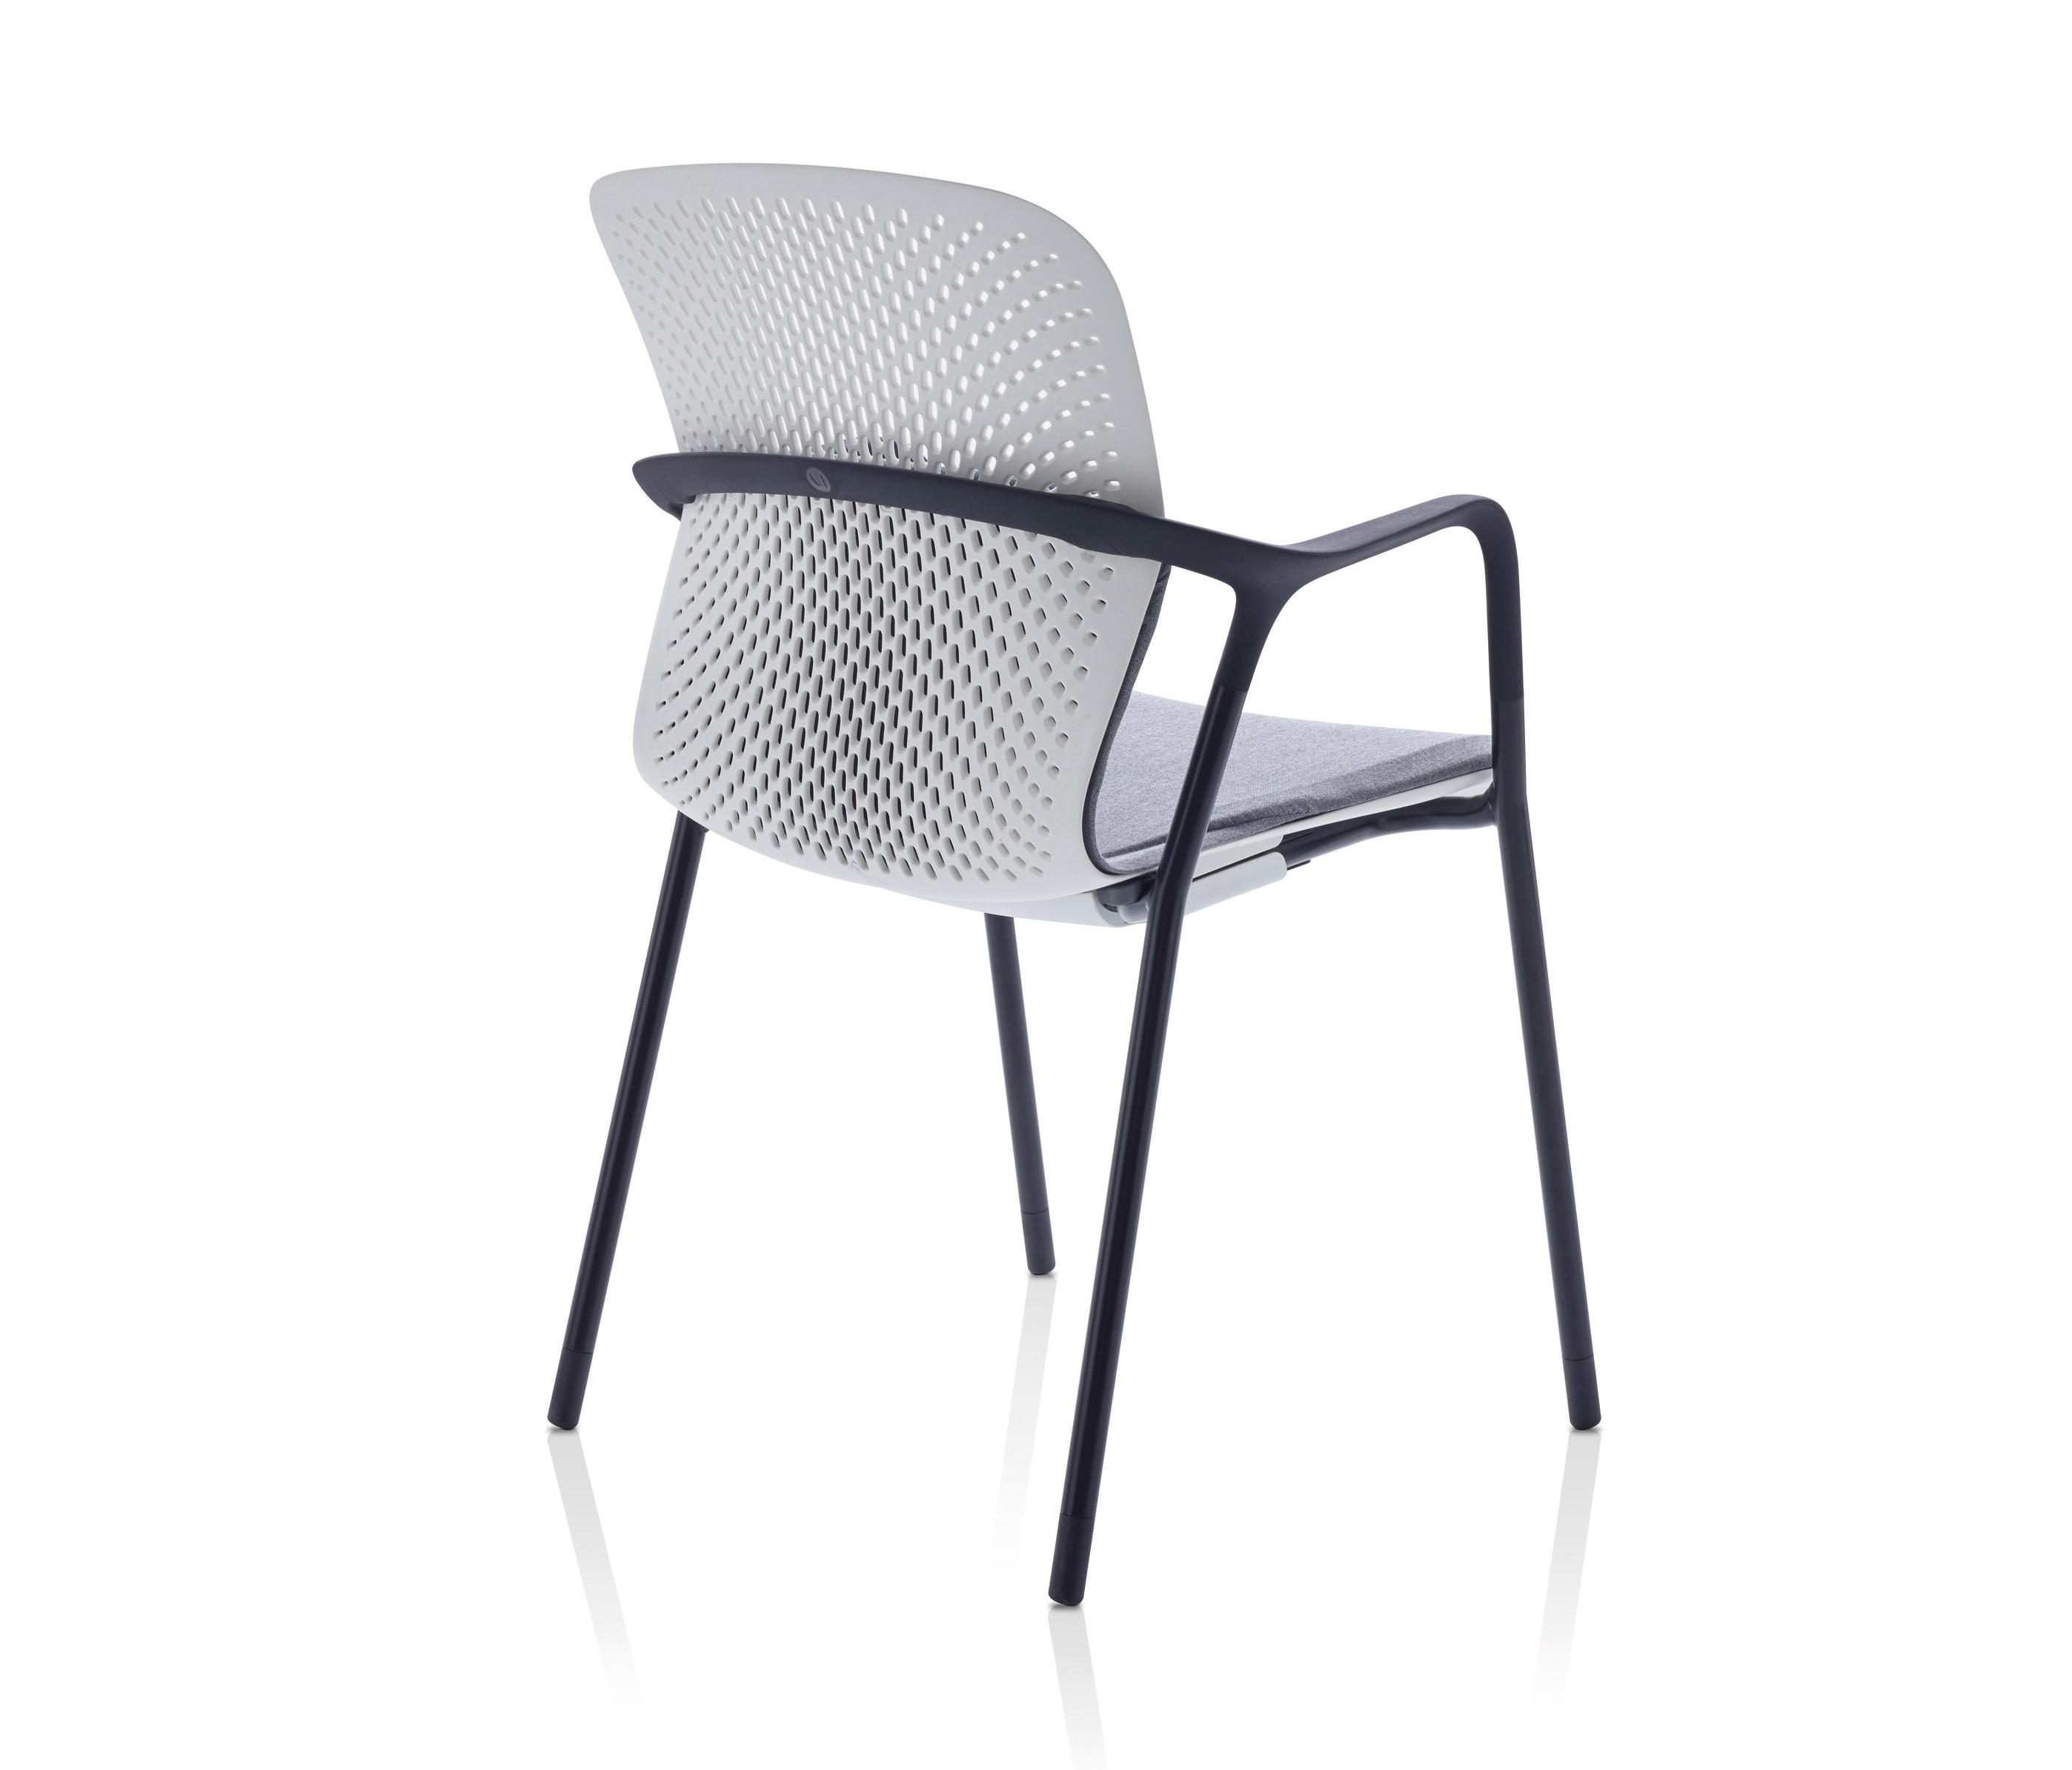 Regelmæssighed afstand Besætte Keyn Chair Group & designer furniture | Architonic